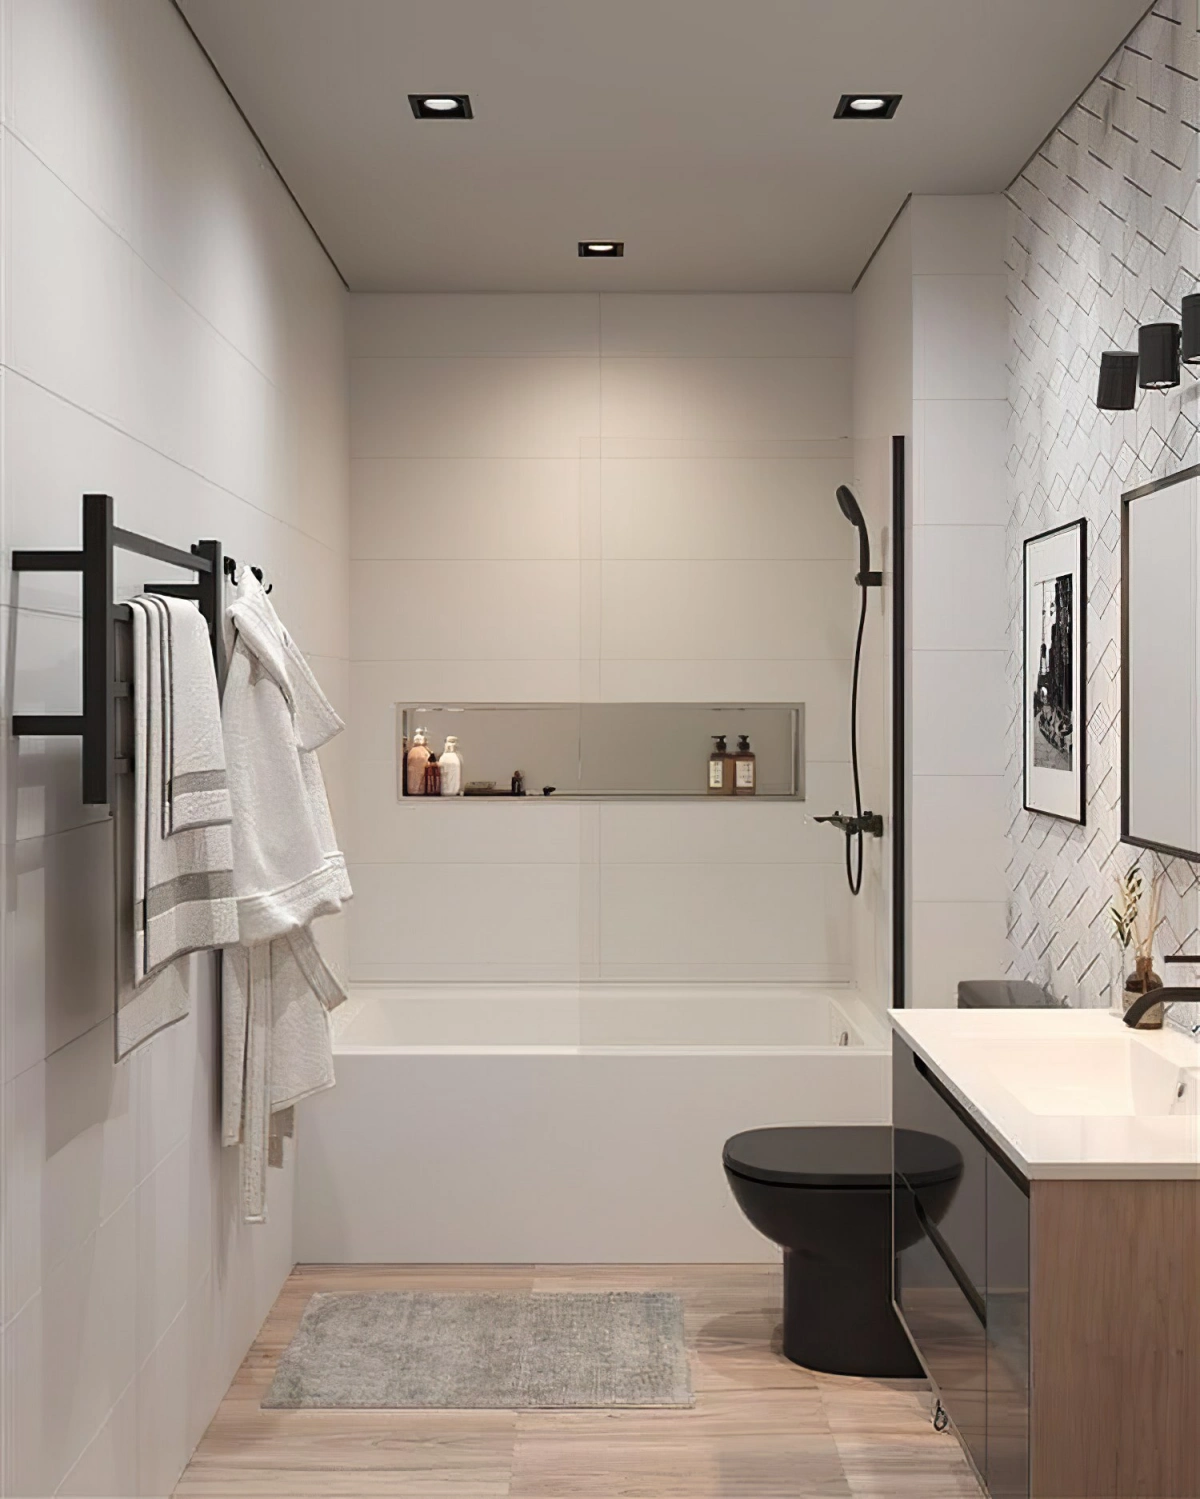 salle de bain moderne carrelage blanc sol bois meuble accents noirs